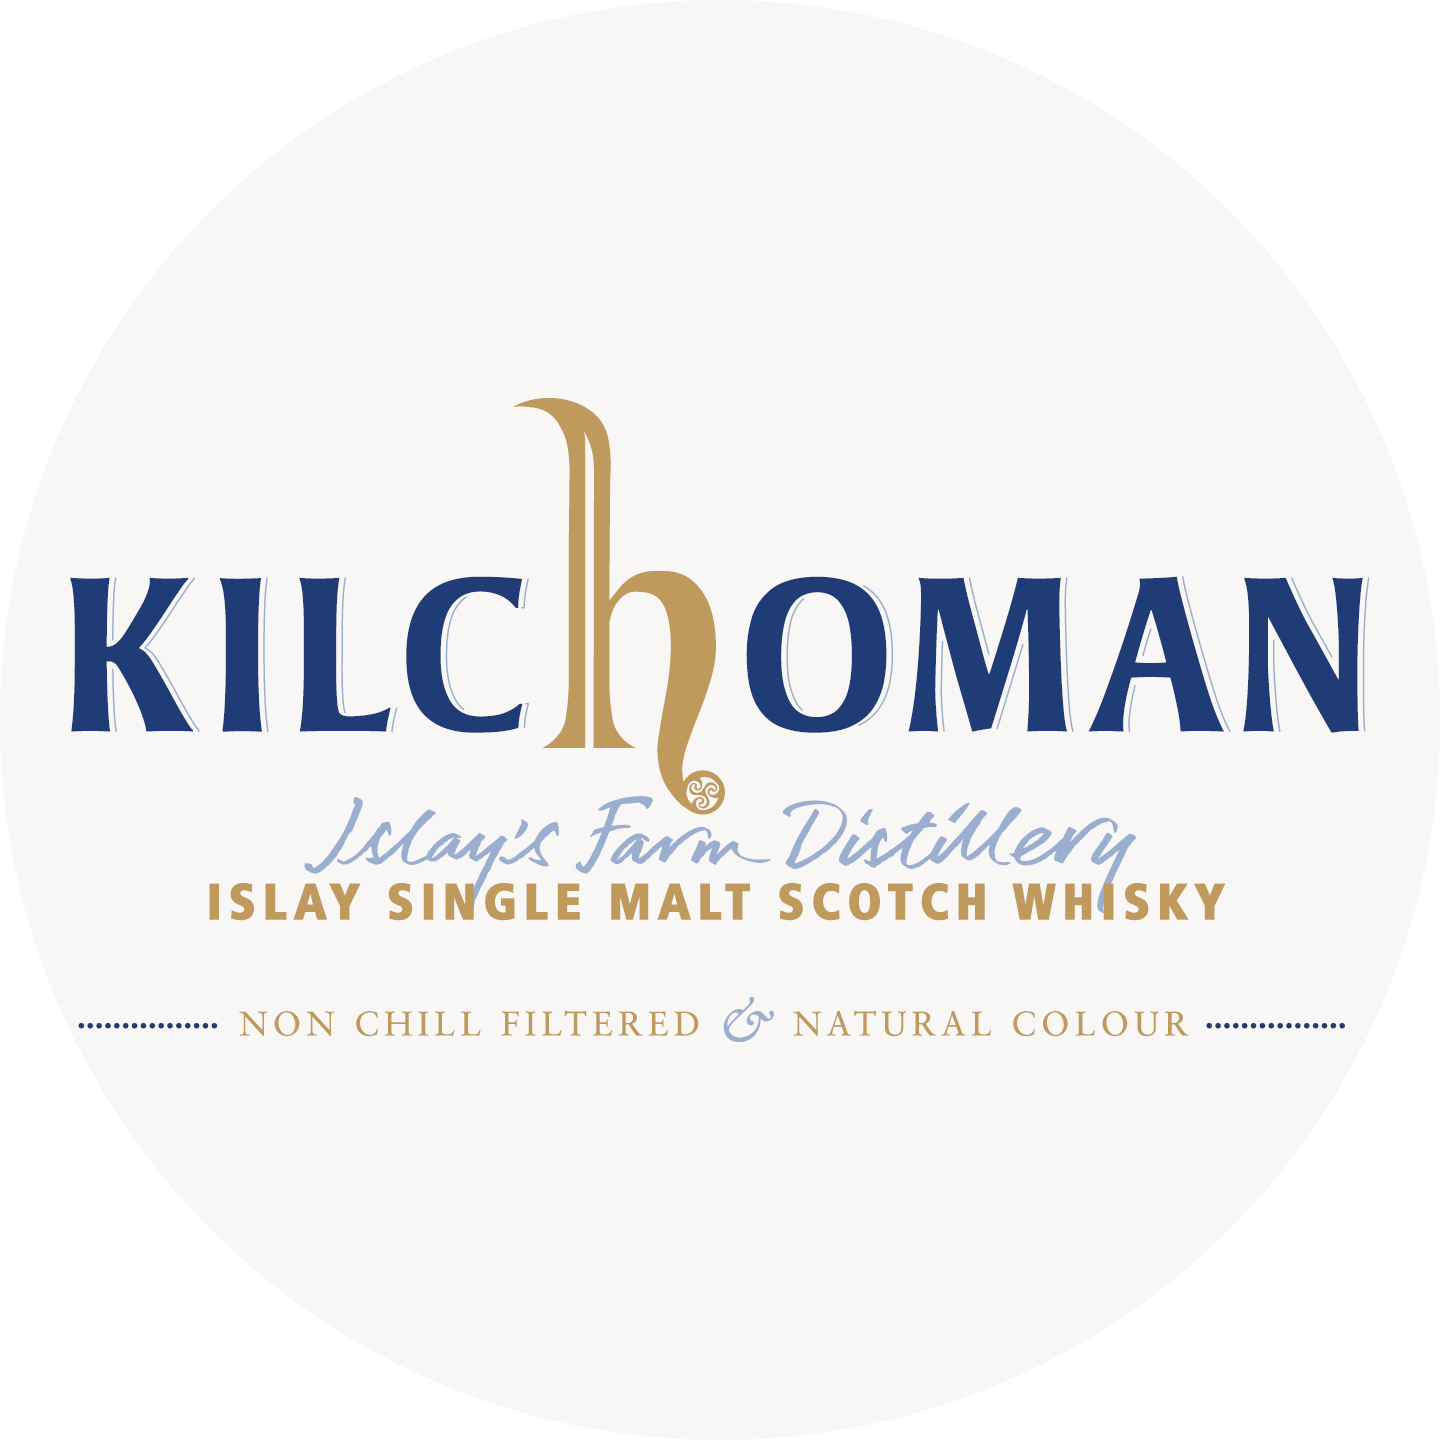 Instagram Bild mit dem Kilchoman Logo